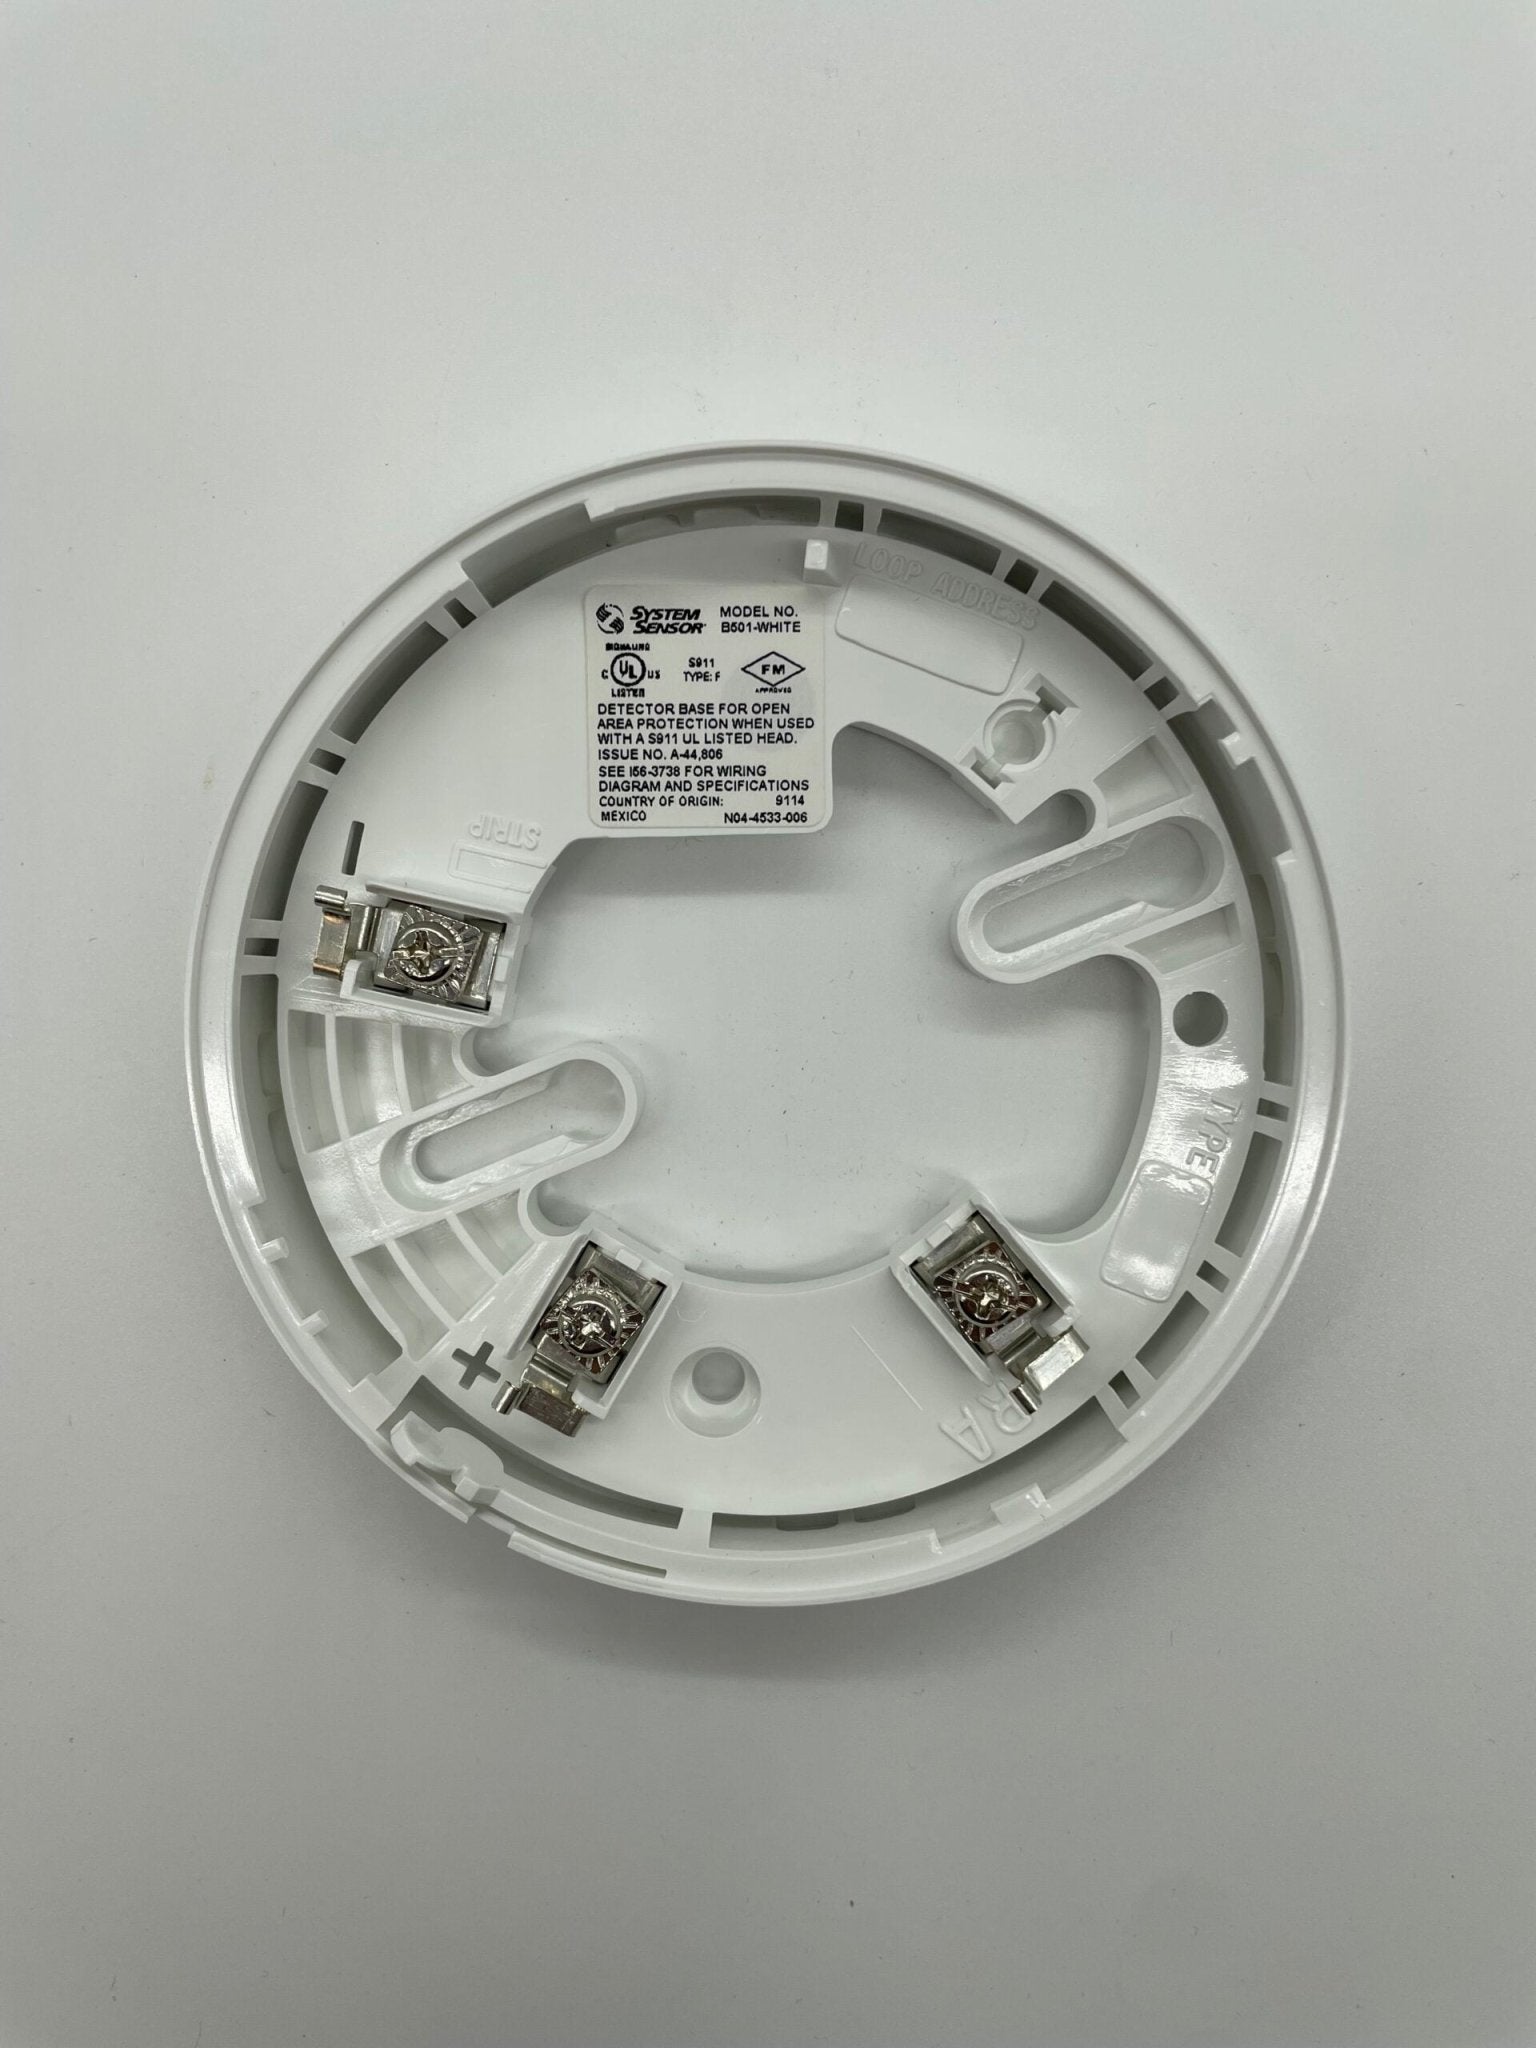 System Sensor B501-WHITE-BP - The Fire Alarm Supplier